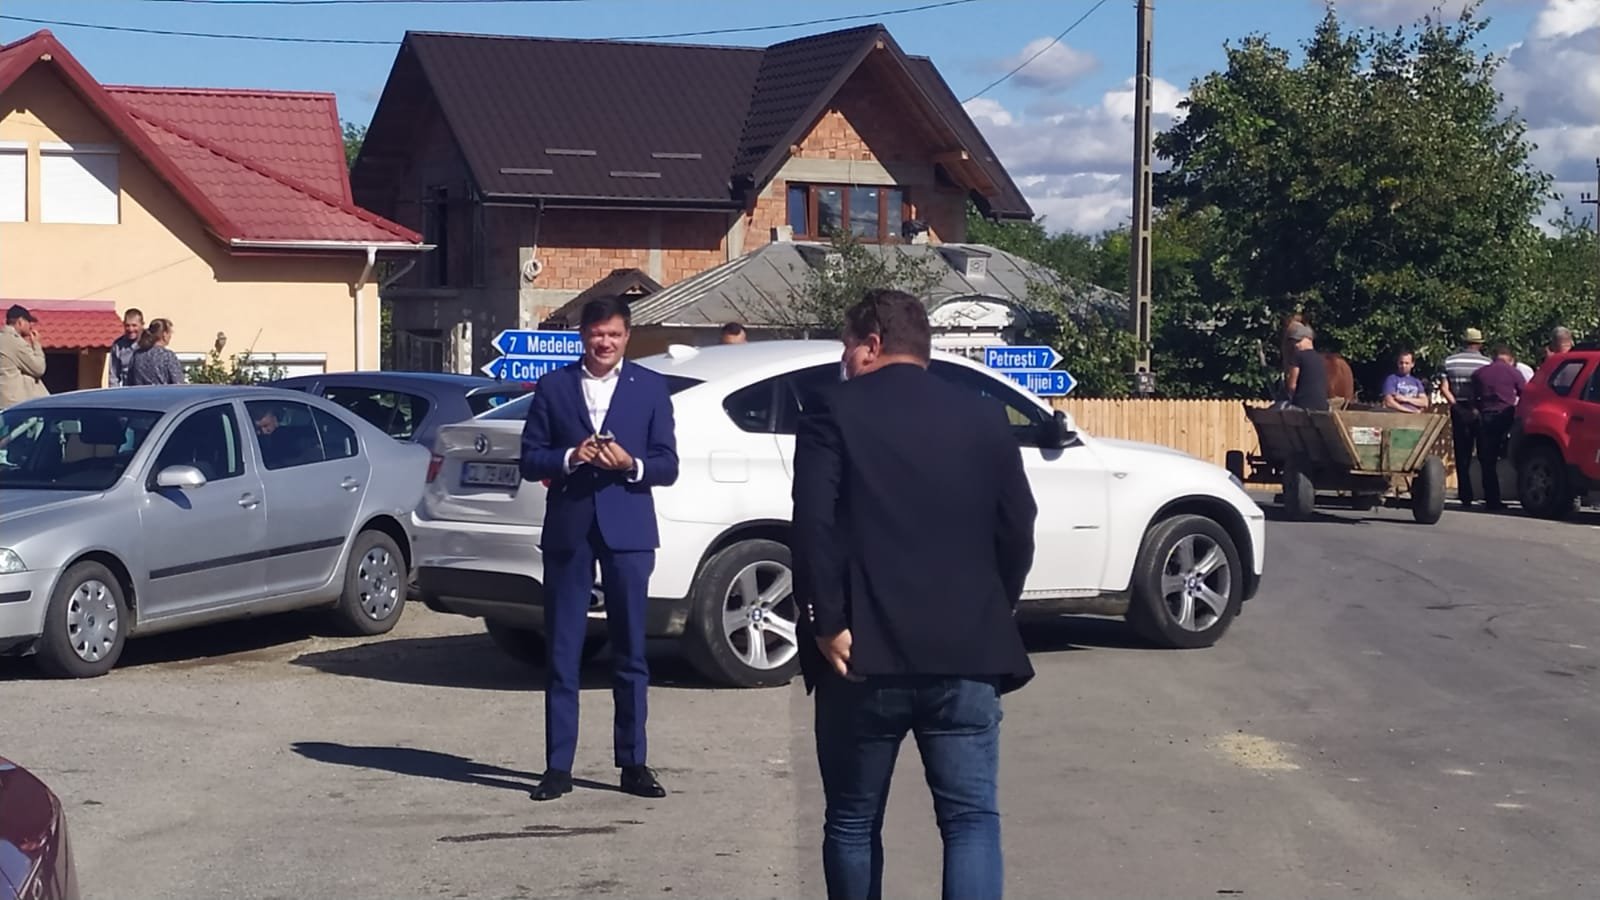  Două plângeri făcute de alegătorii din Golăești. Ce probleme au semnalat aceștia